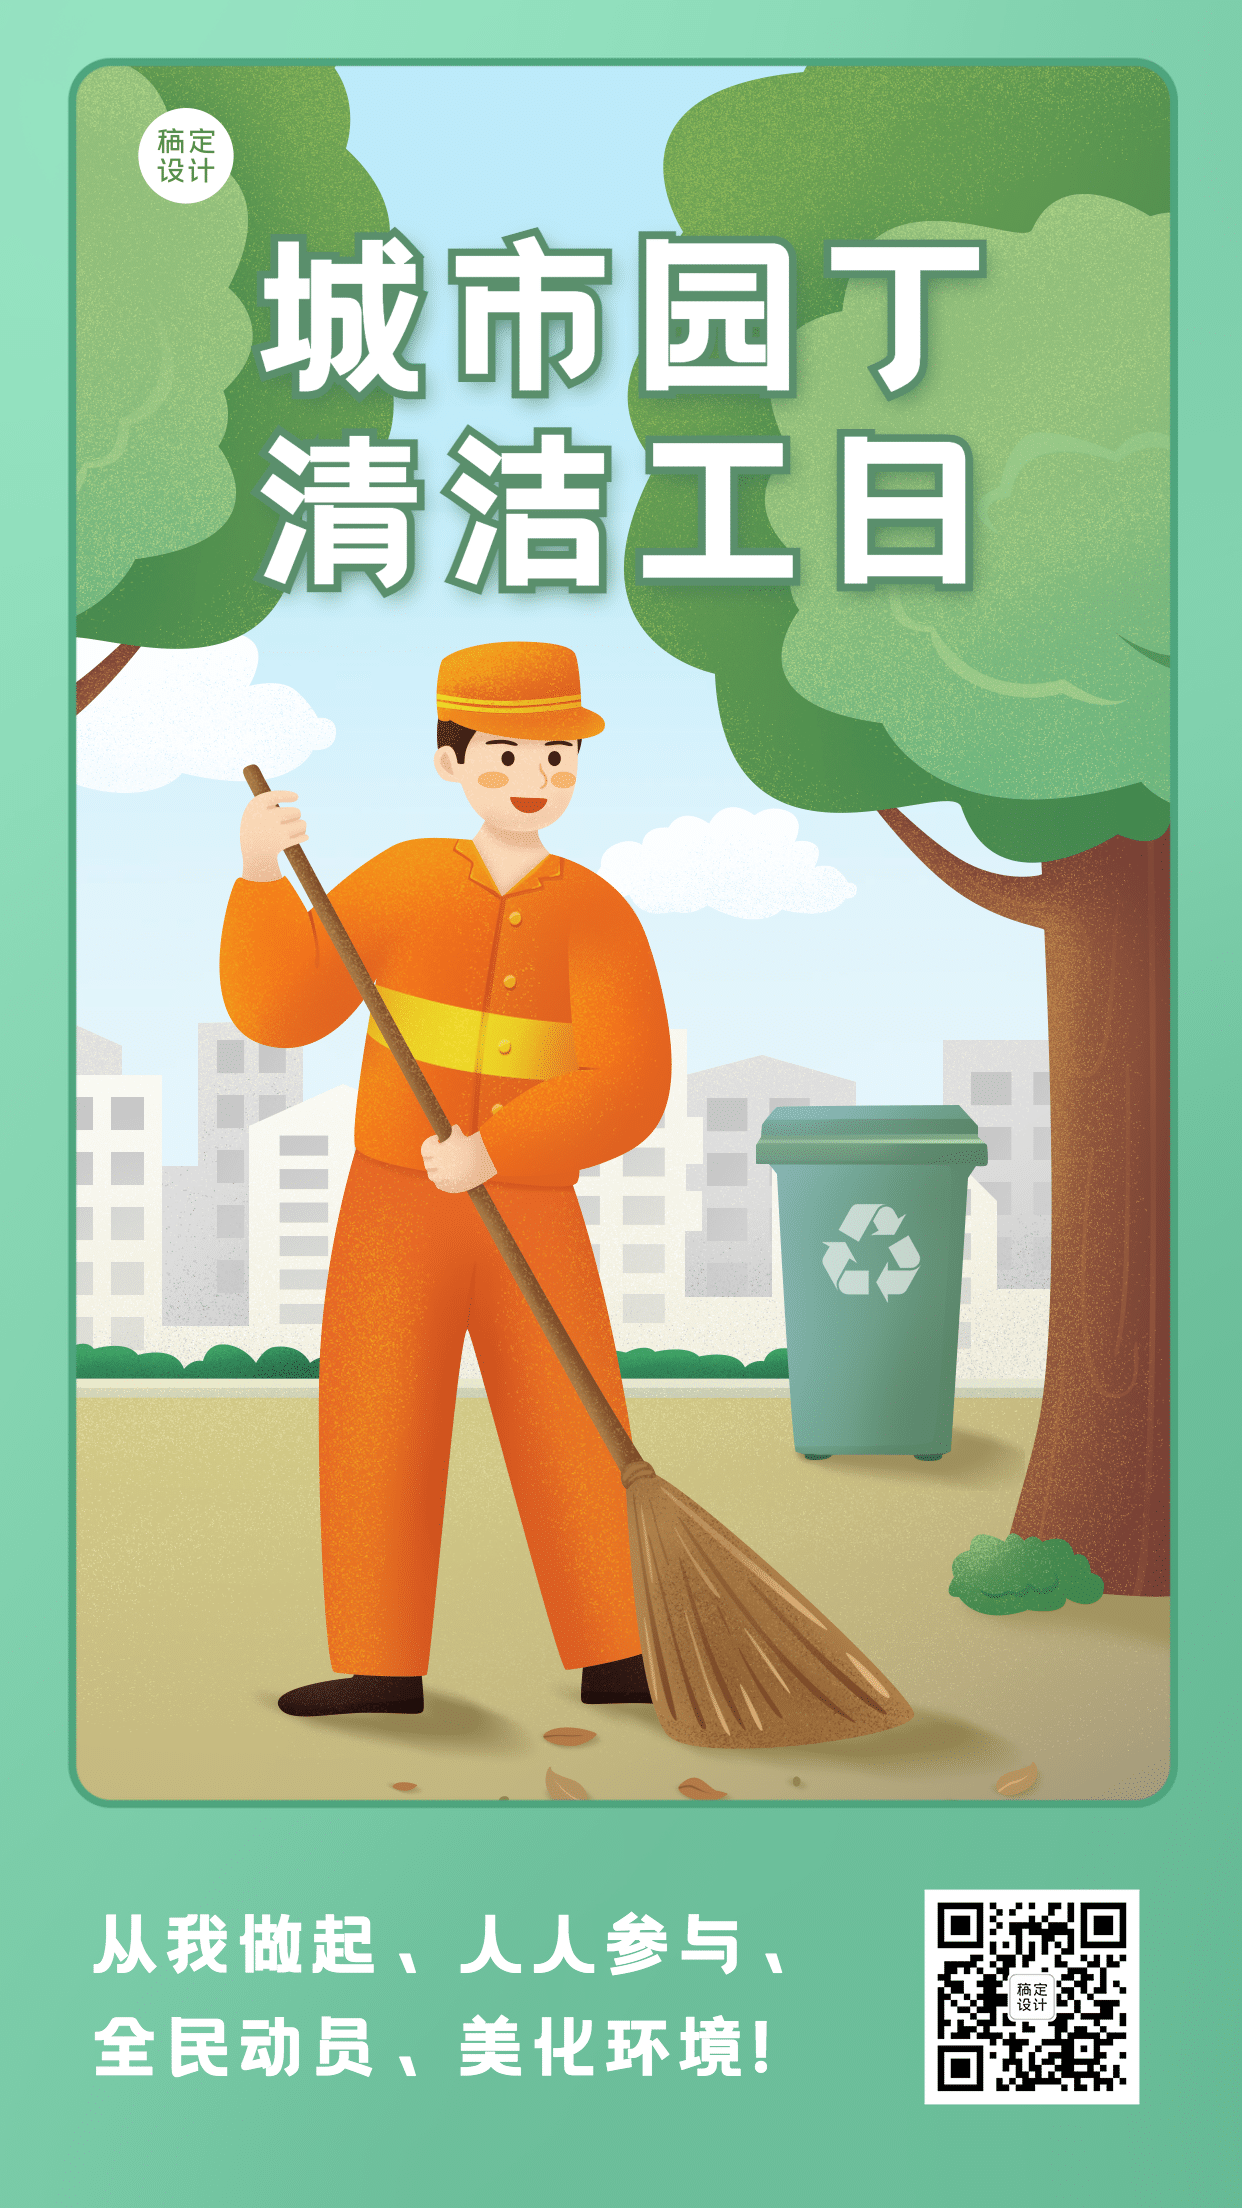 清洁工日城市环保公益宣传手绘手机海报预览效果